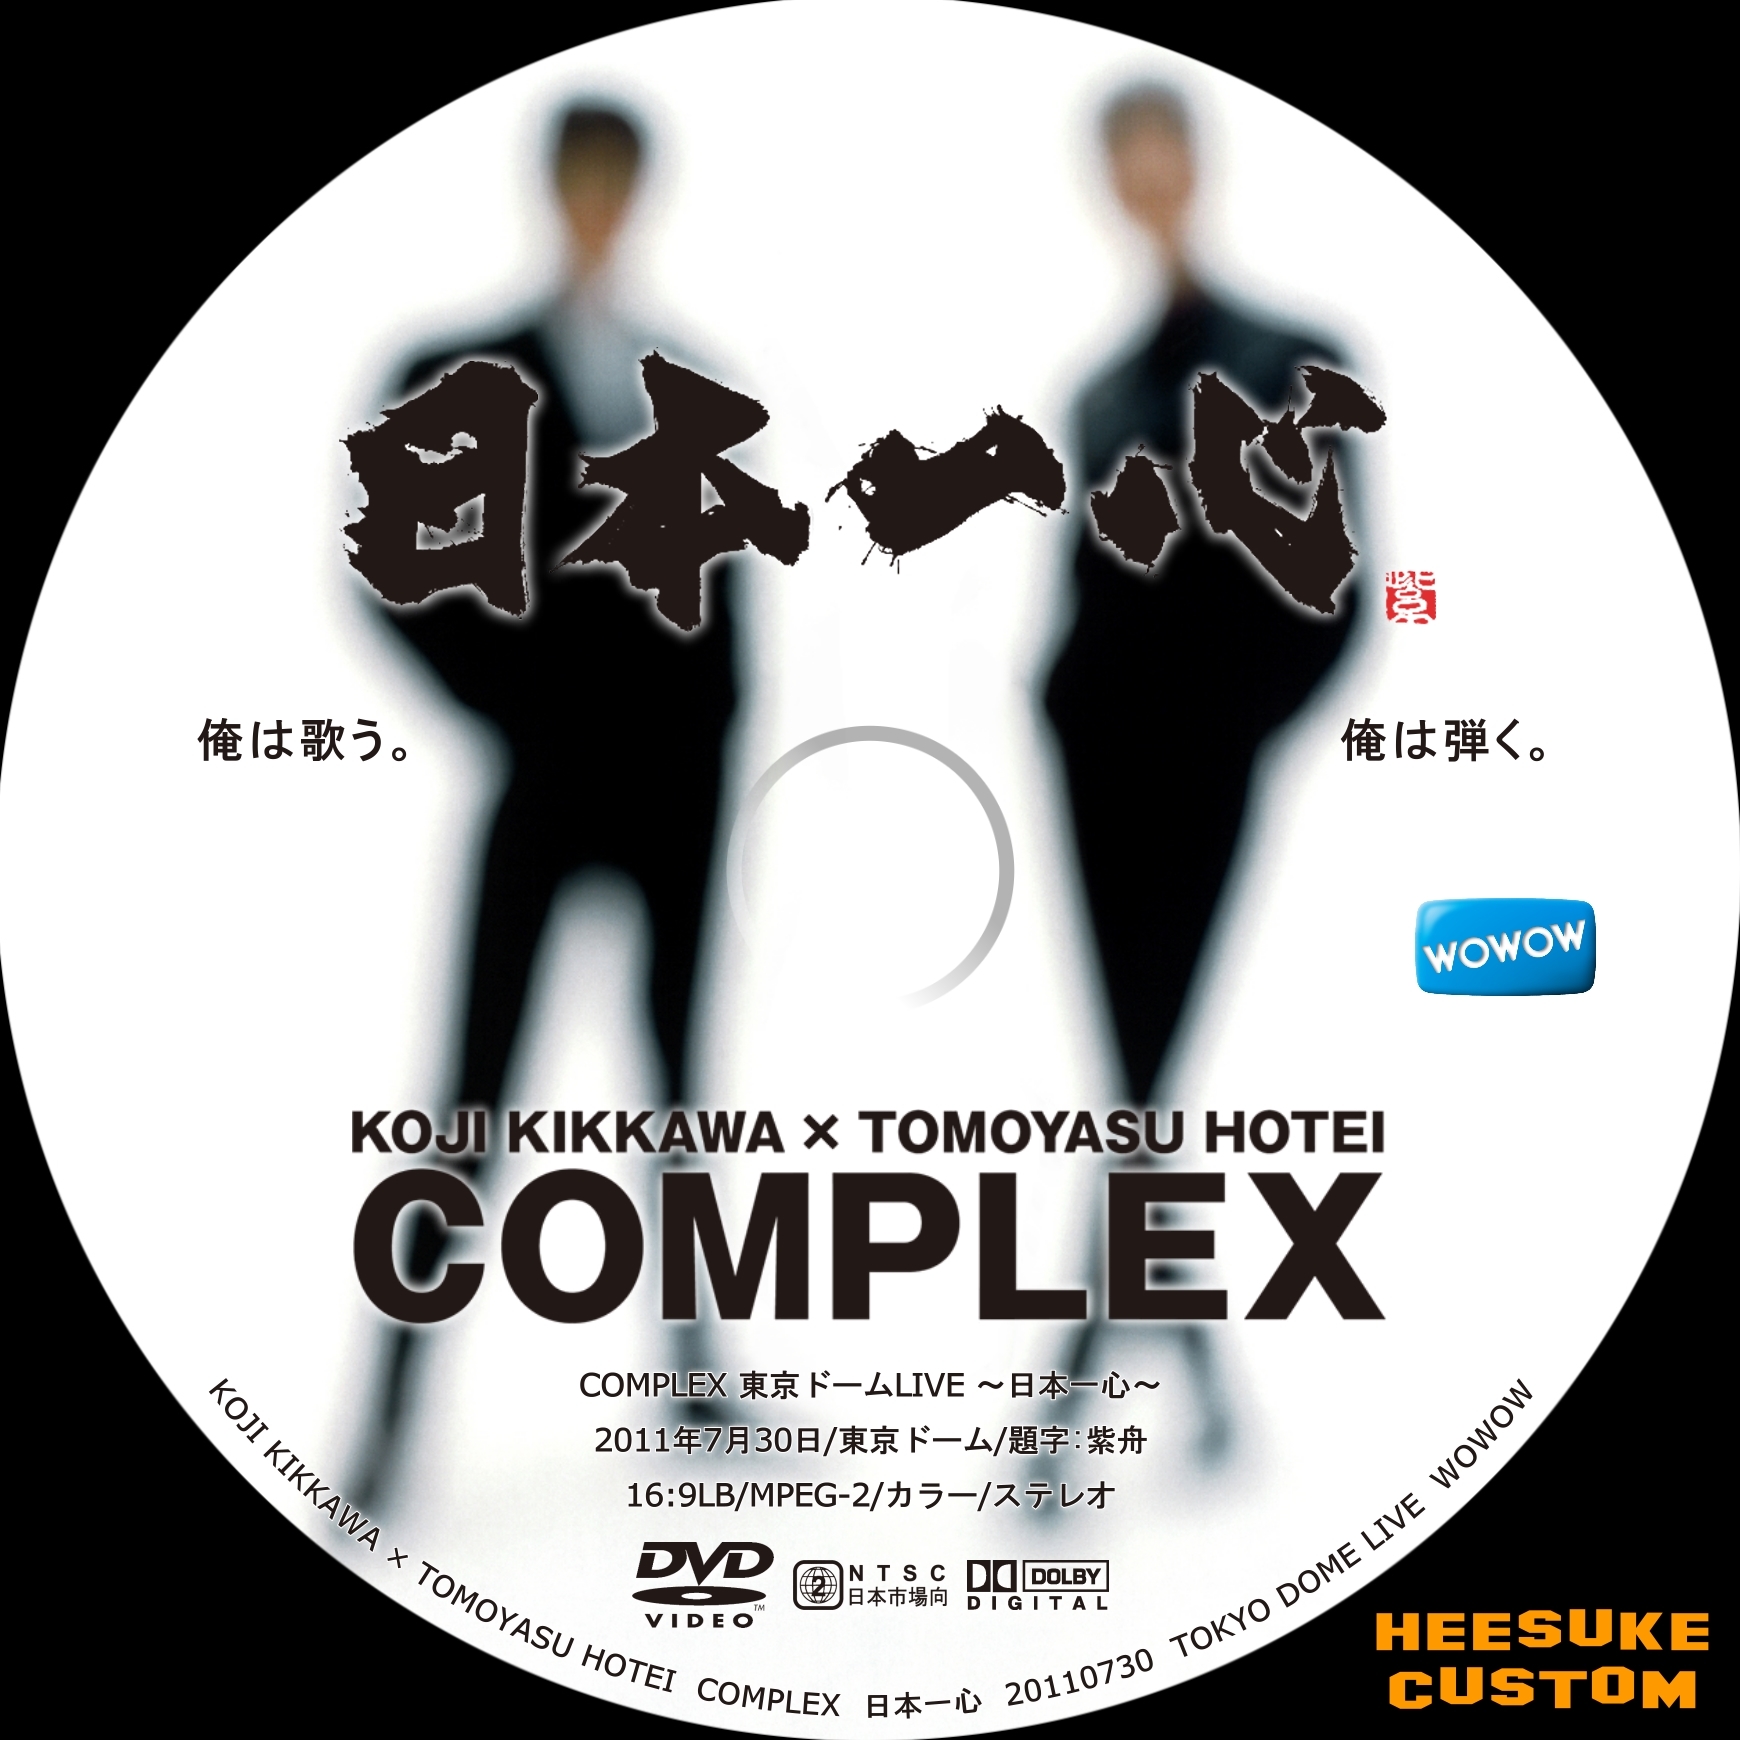 贅沢屋の コンプレックス COMPLEX 日本一心 布袋寅泰 吉川晃司 DVD